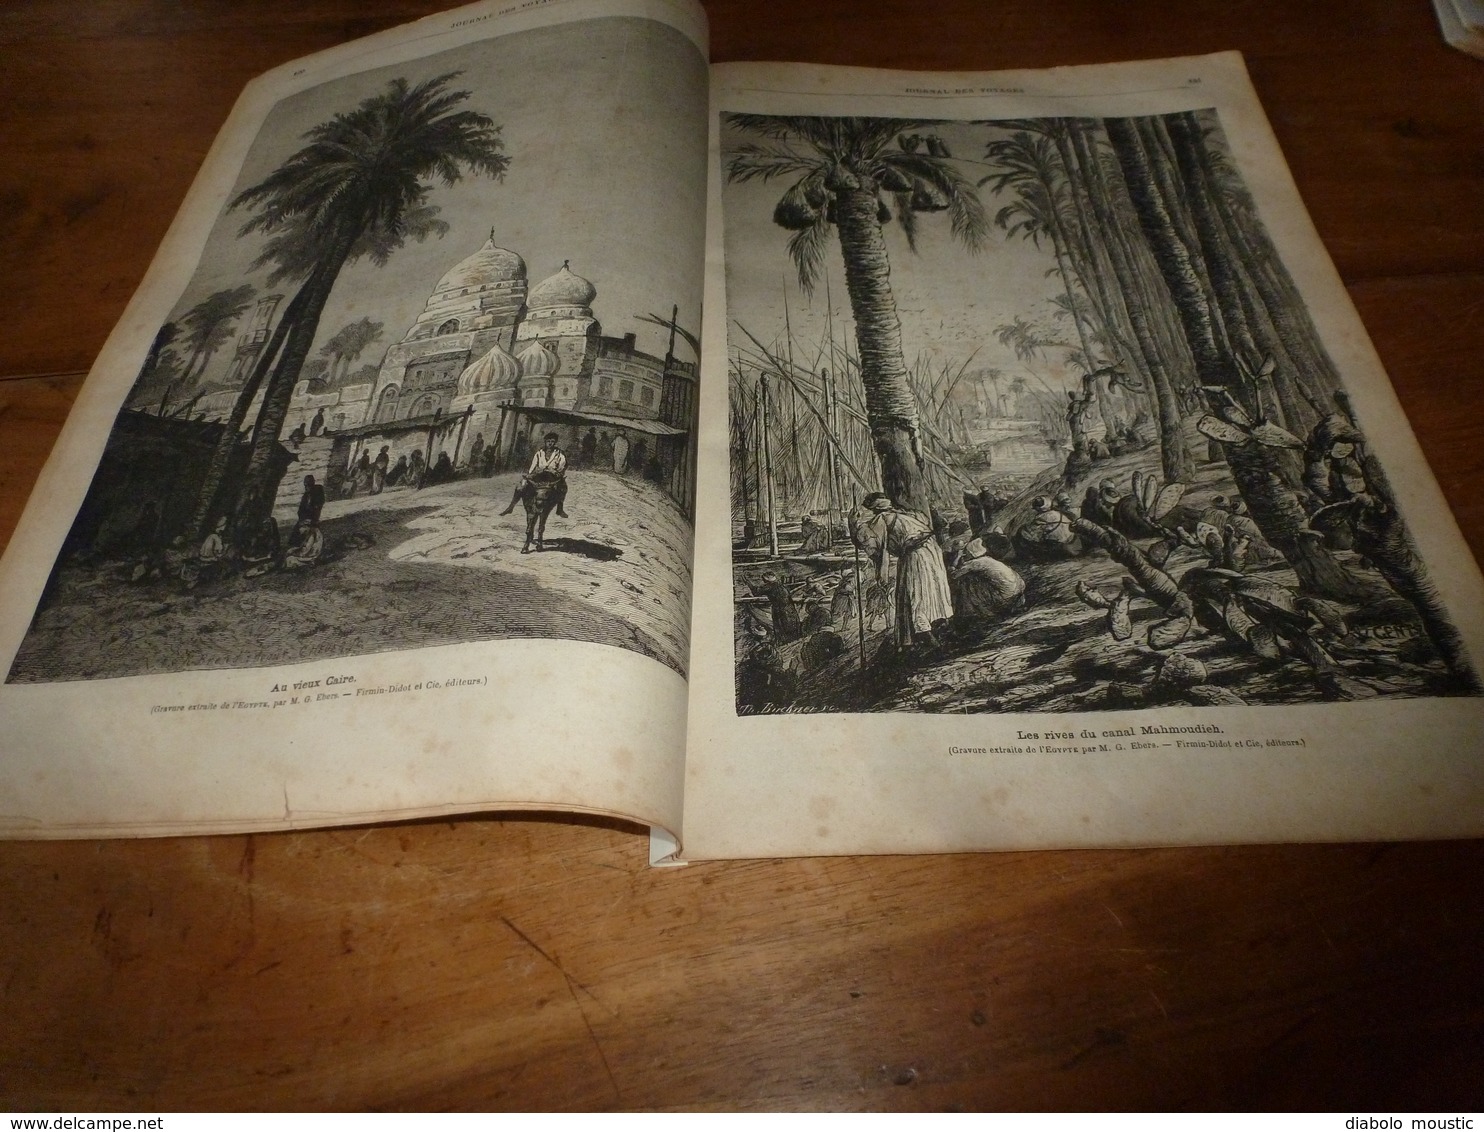 1882 JDV:Chasse au tigre;Egypte avec gravures (Le Caire,Canal Mahmoudieh,Dahabieh,Chameliers traversant le désert; etc